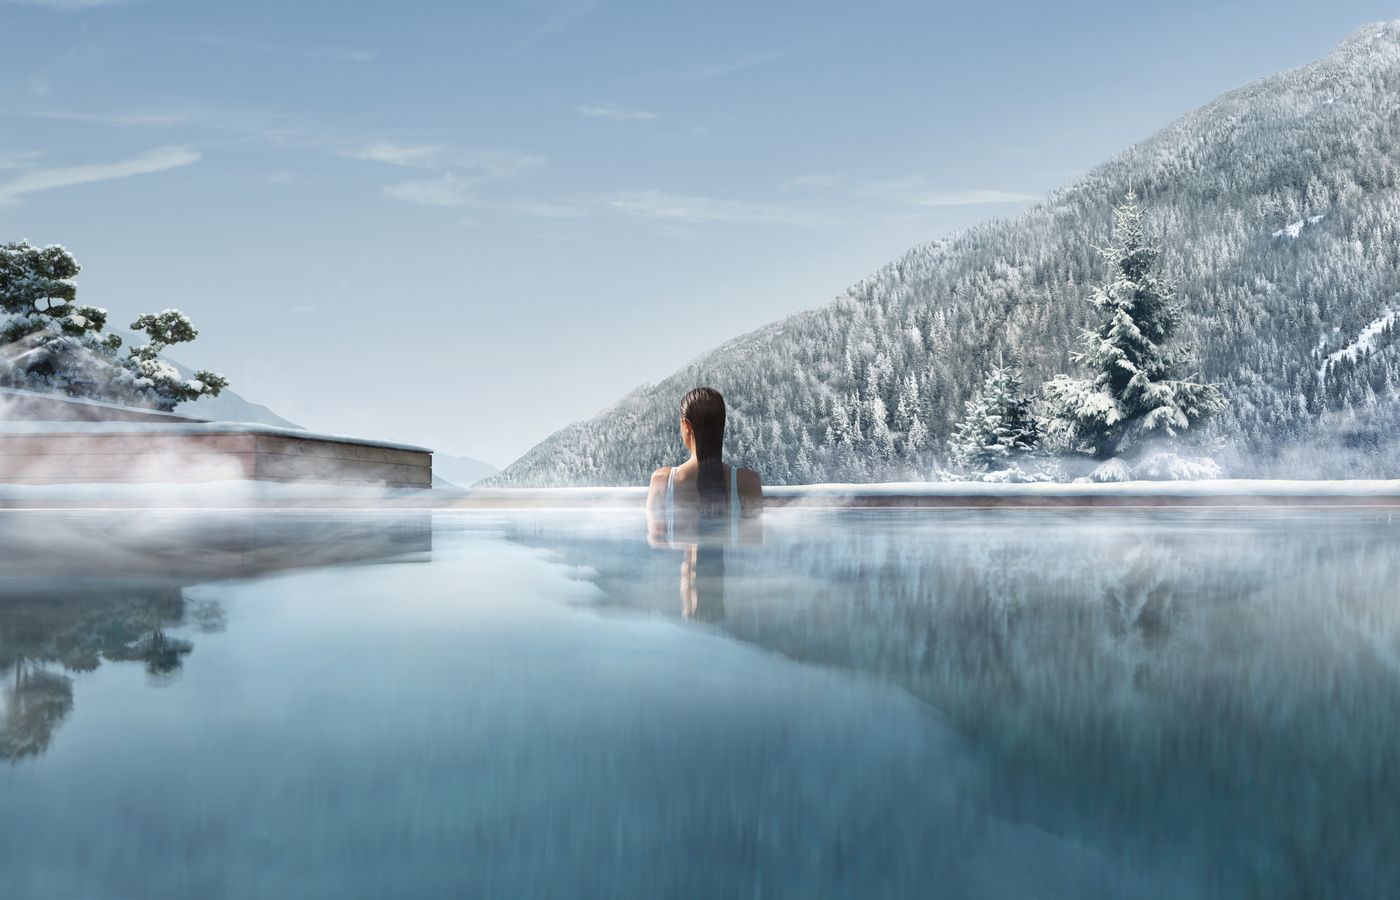 Trip Frankreich - FitReisen - Lefay Resort & Spa Dolomiti in Pinzolo buche jetzt Deinen Wellness & Beauty Urlaub im Lefay Resort & Spa Dolomiti in der Region Südtirol, in Italien günstig bei uns!